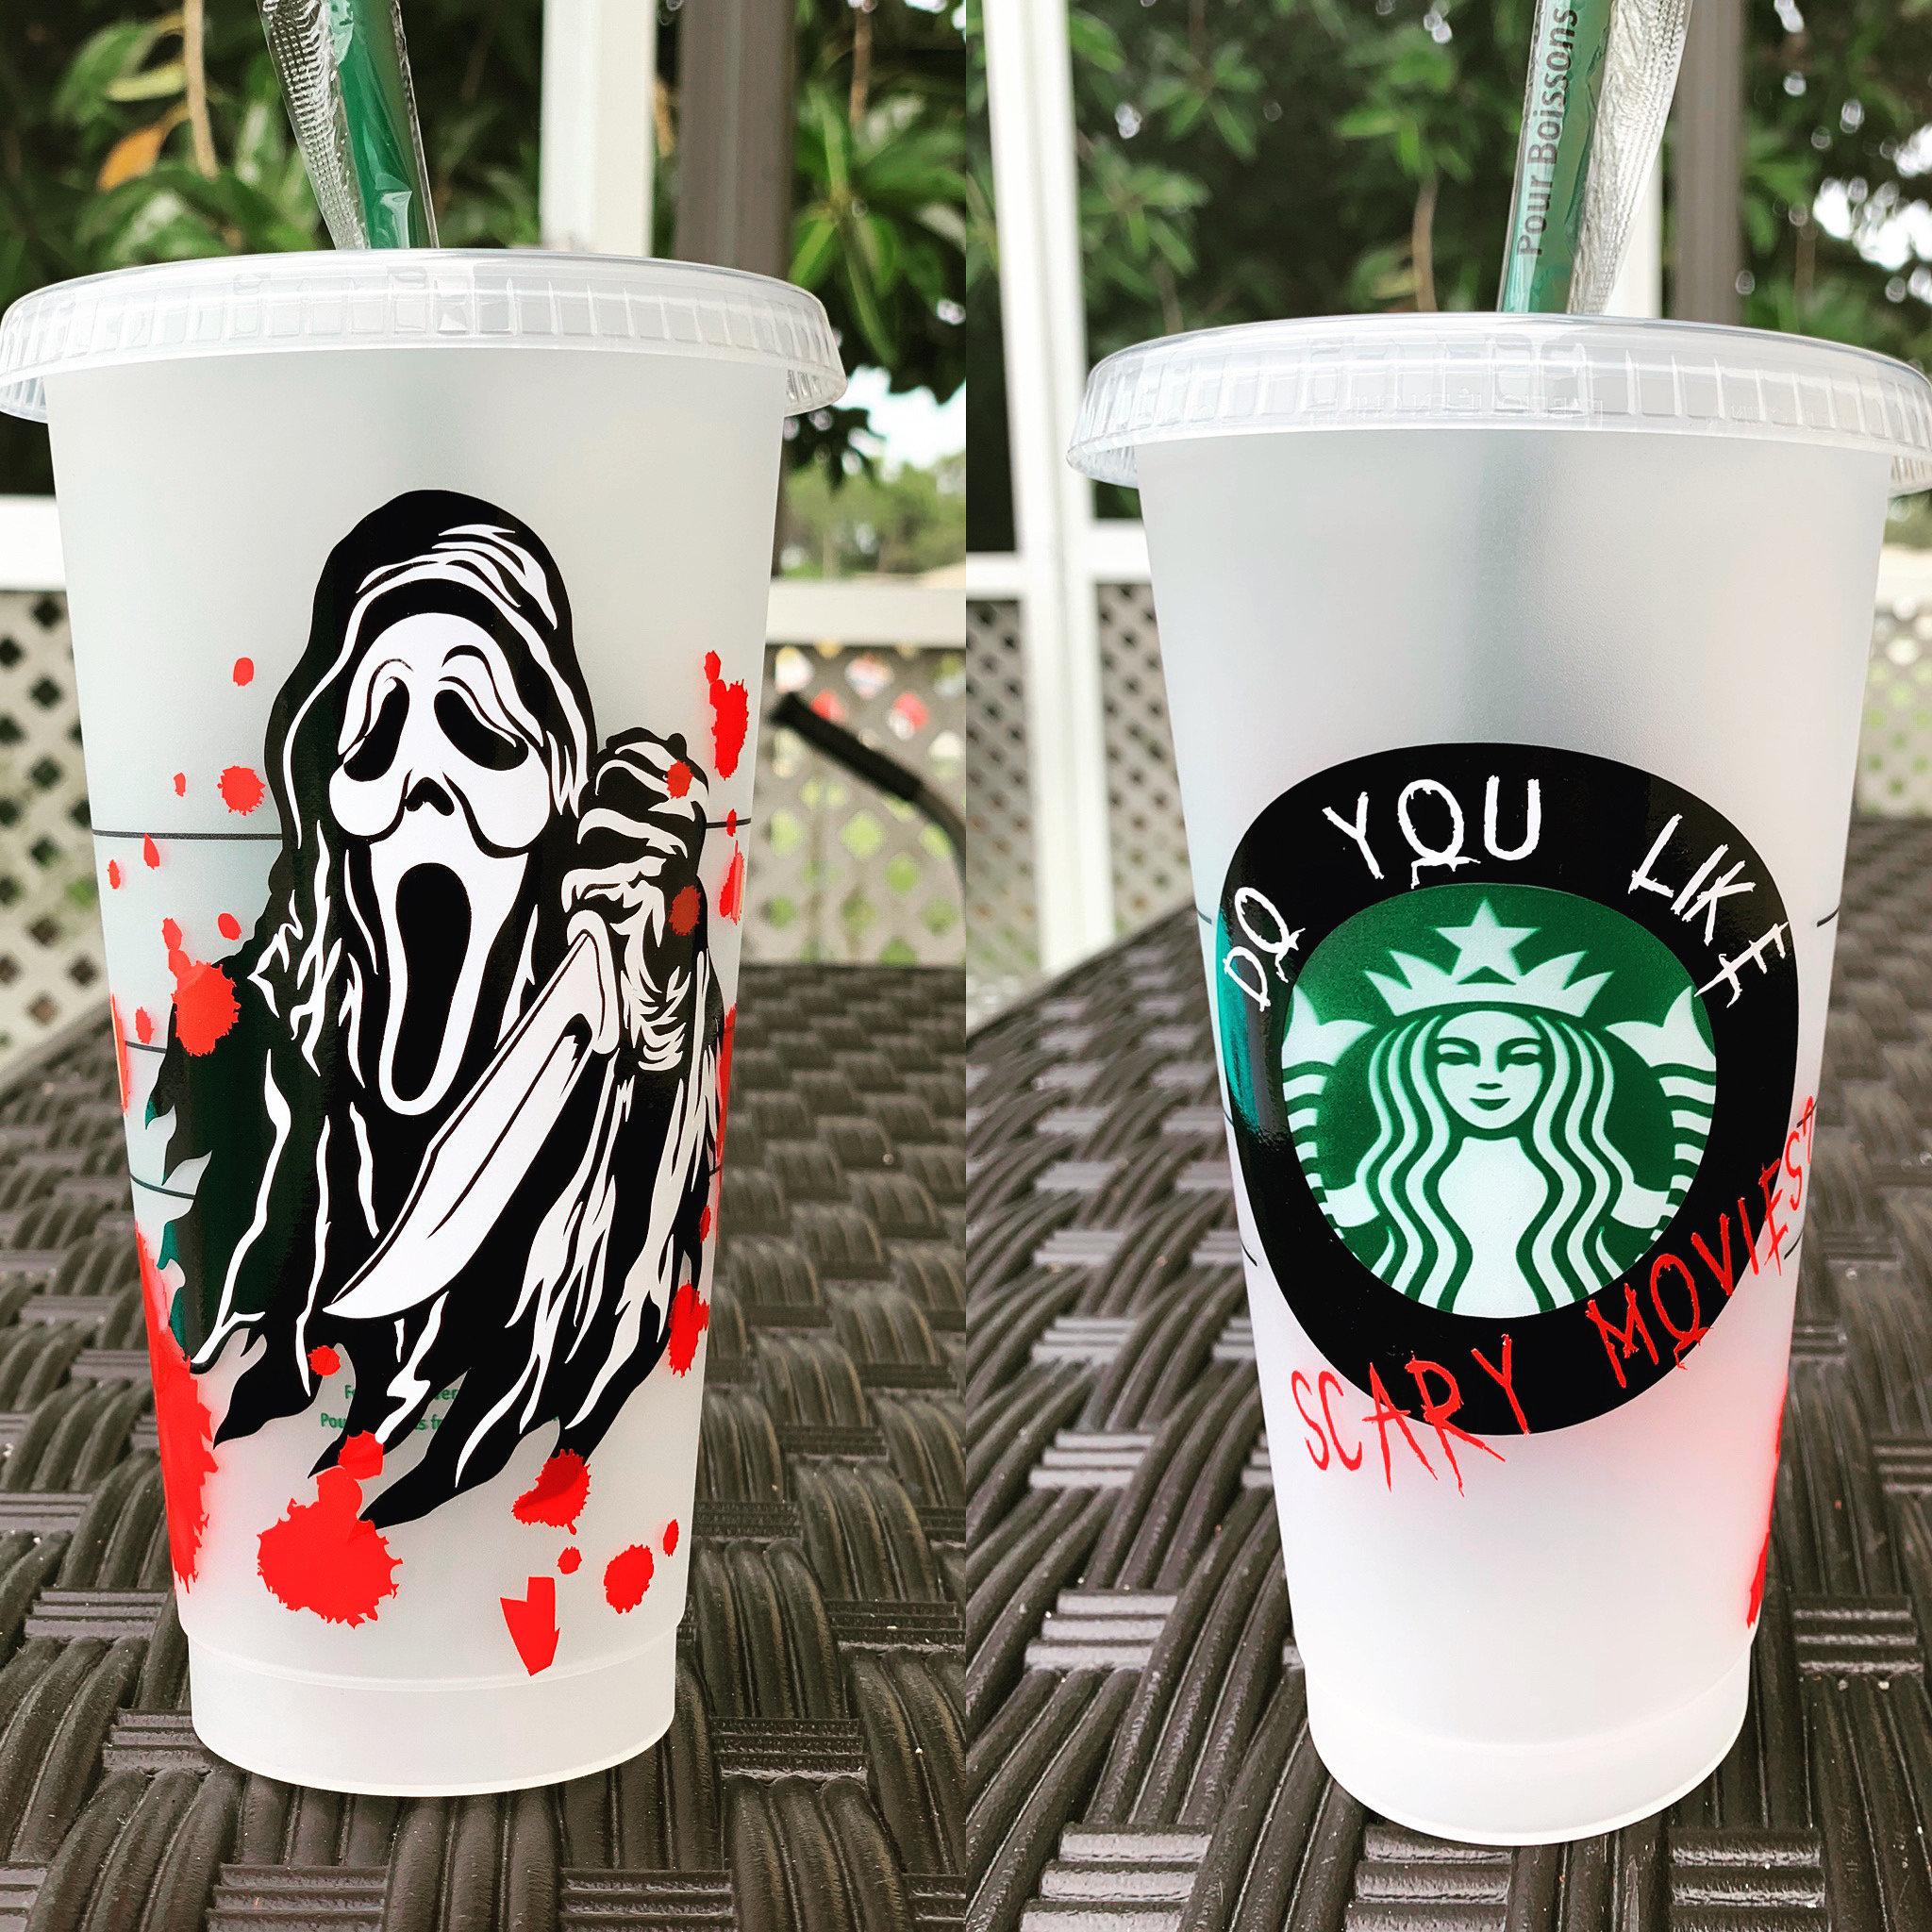 24oz Scream Starbucks Cold cup